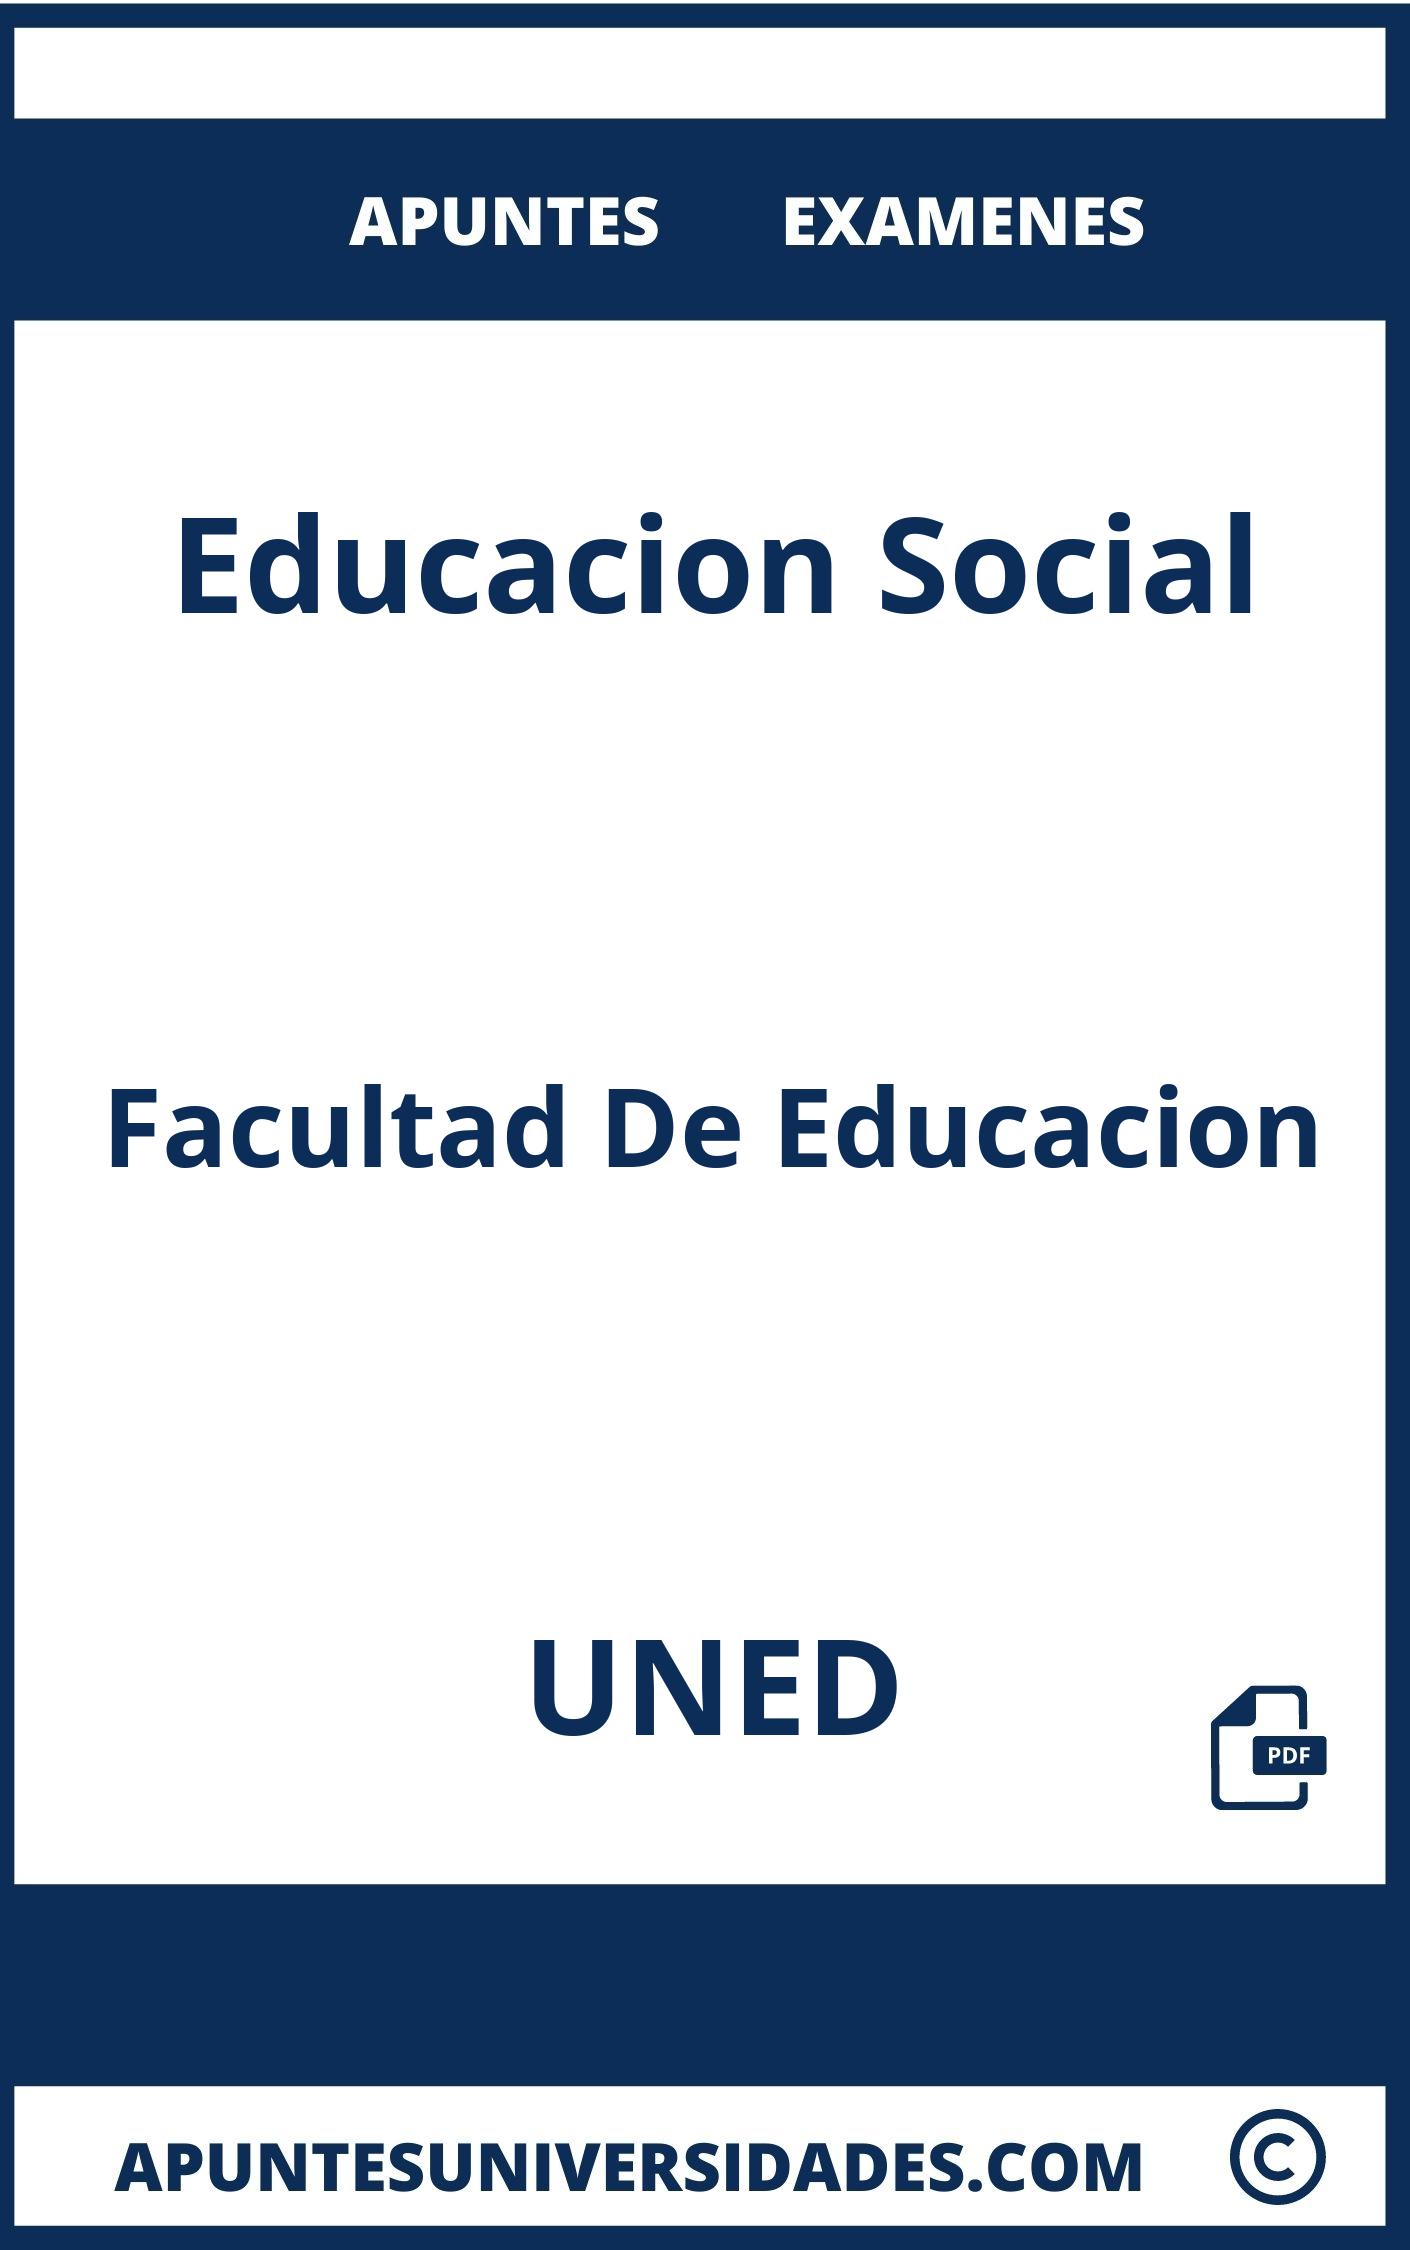 Examenes y Apuntes Educacion Social UNED